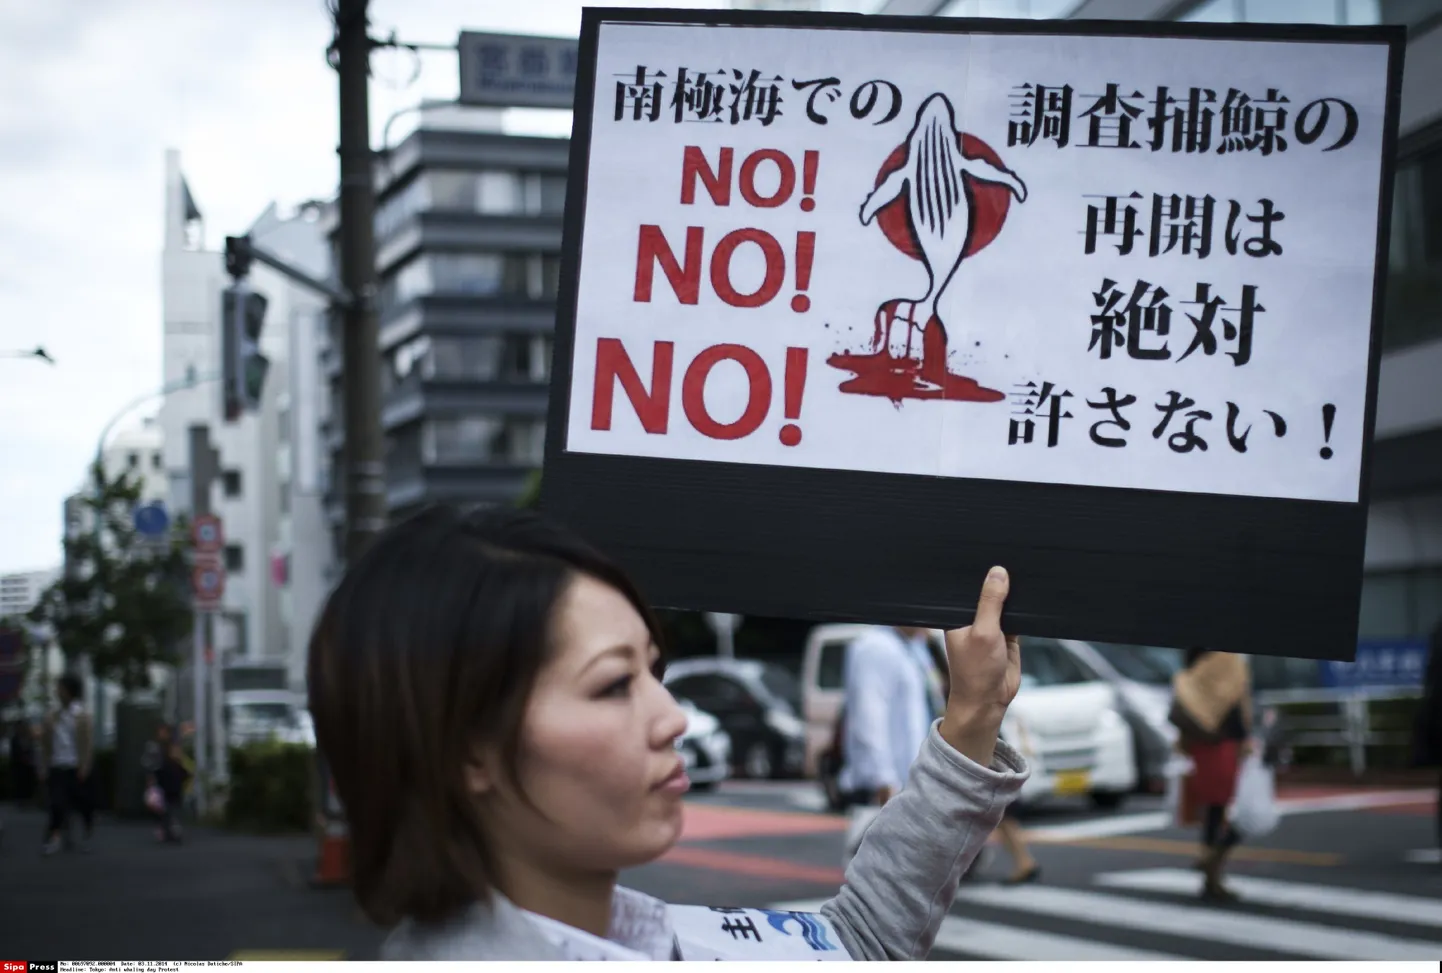 Vaalapüüki vastustanud meeleavaldus Jaapanis Shibuyas.